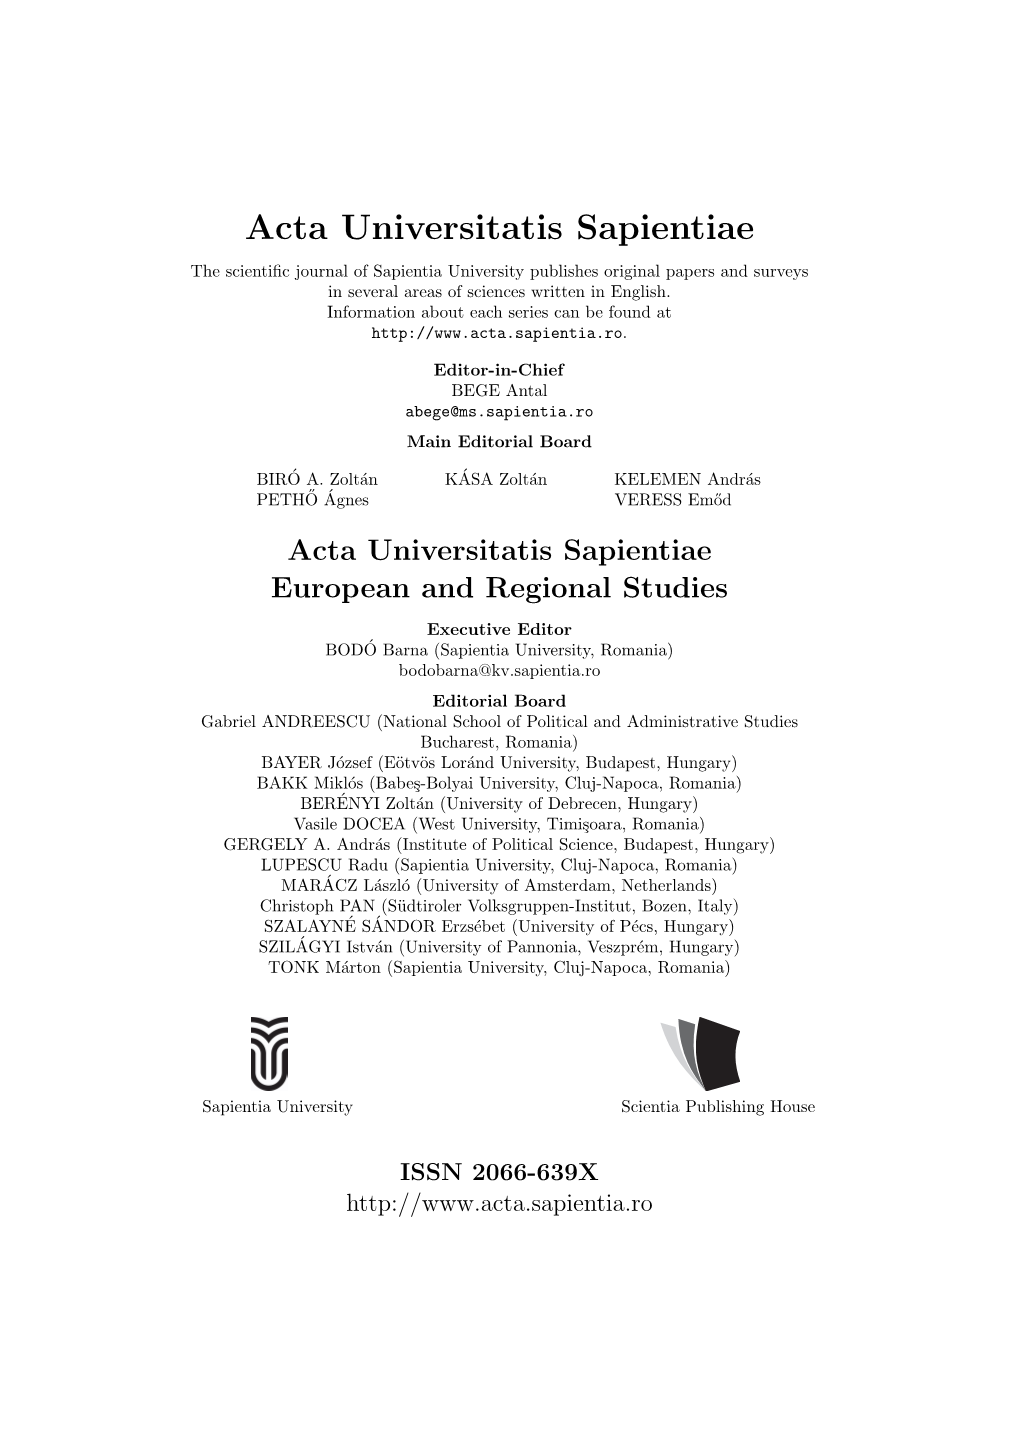 Acta Universitatis Sapientiae European and Regional Studies